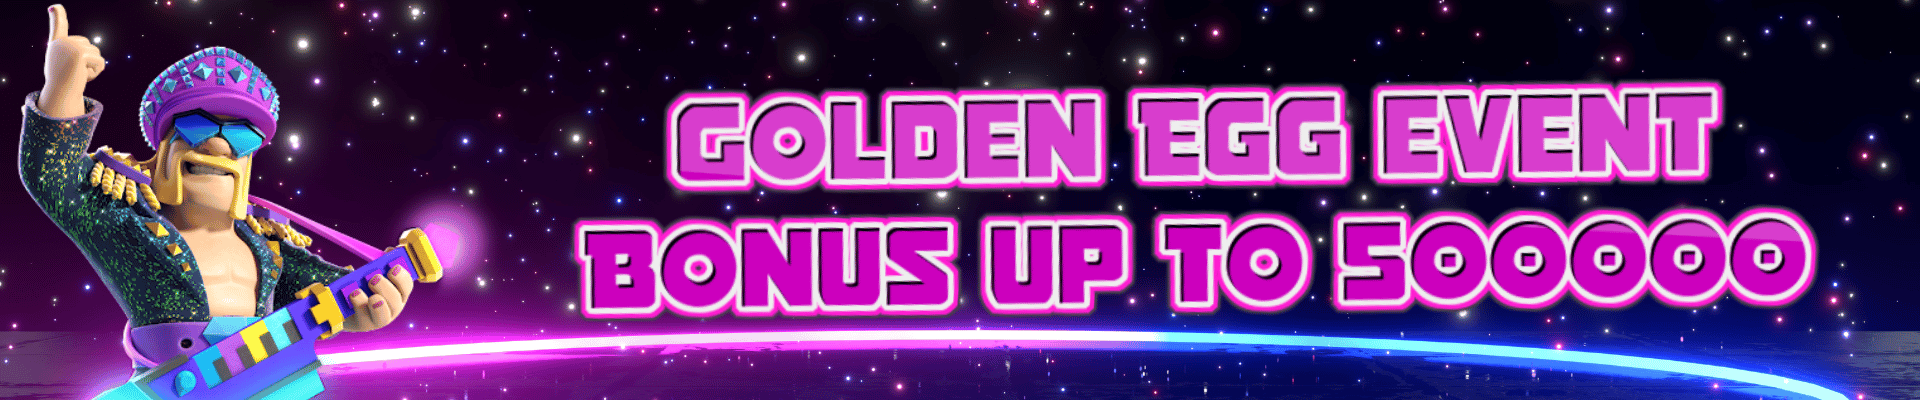 golden-egg-event_banner